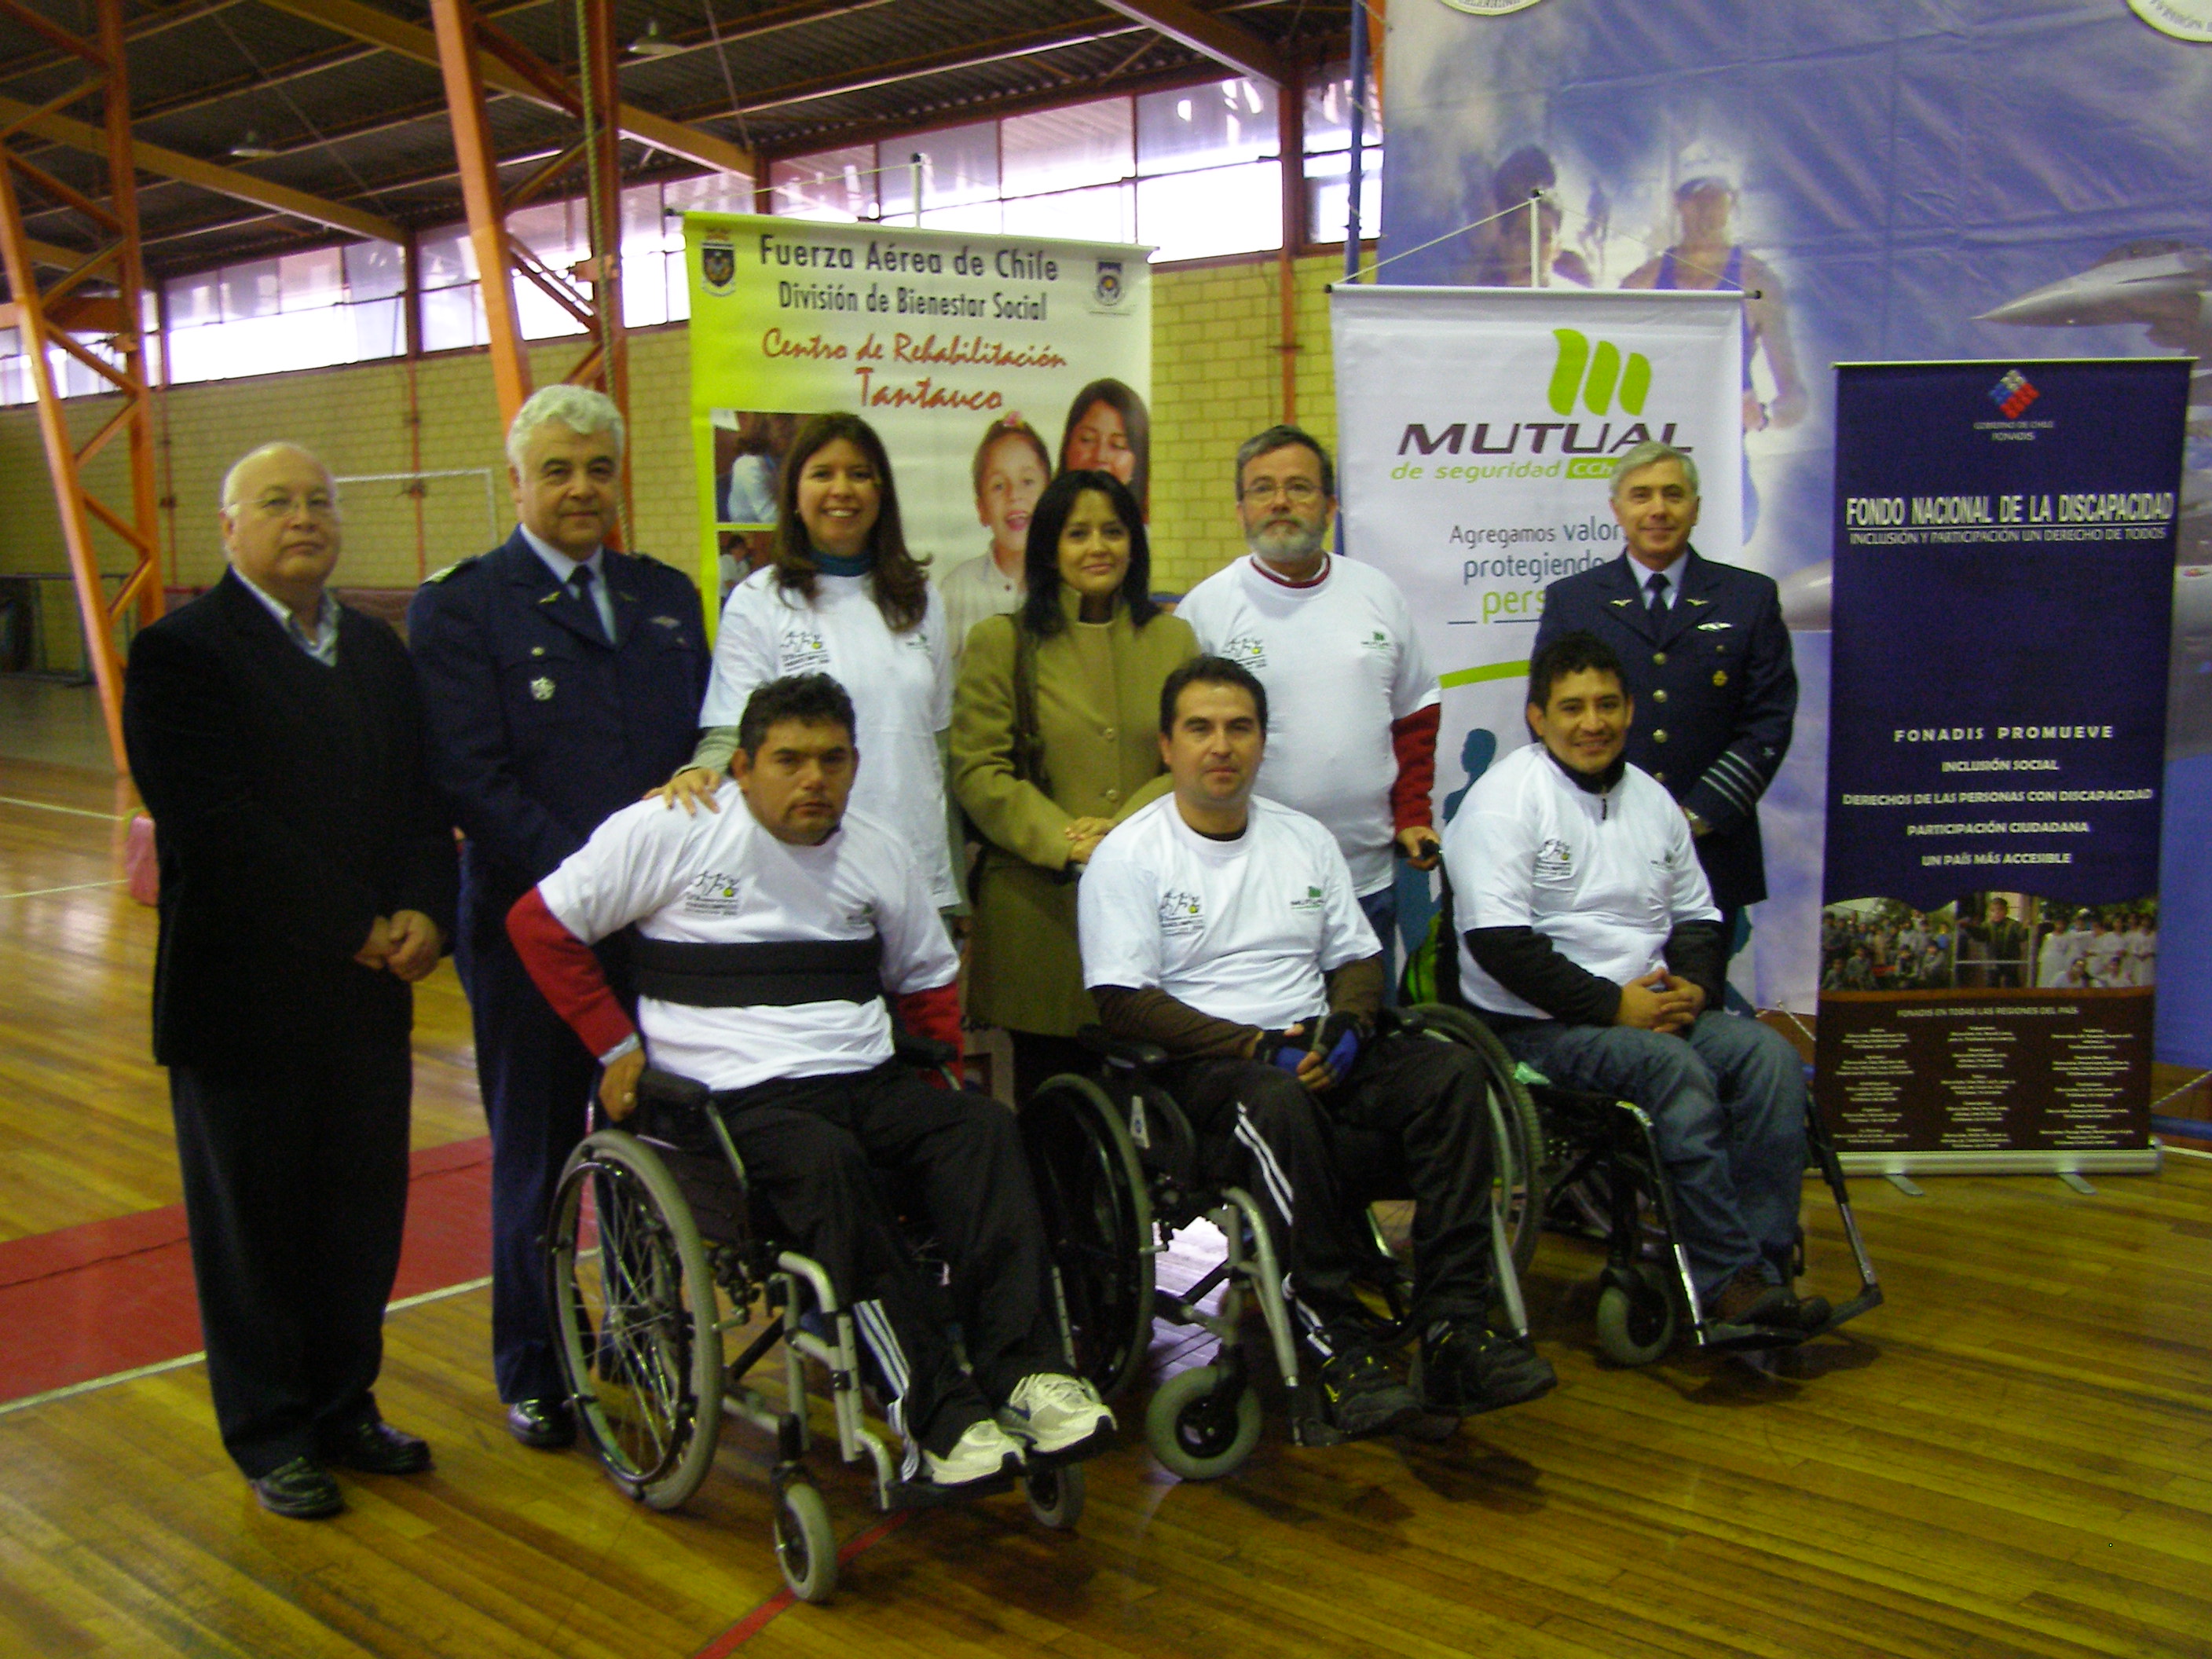 En la foto aparecen la Coordinadora Regional, deportistas con discapacidad y los organizadores